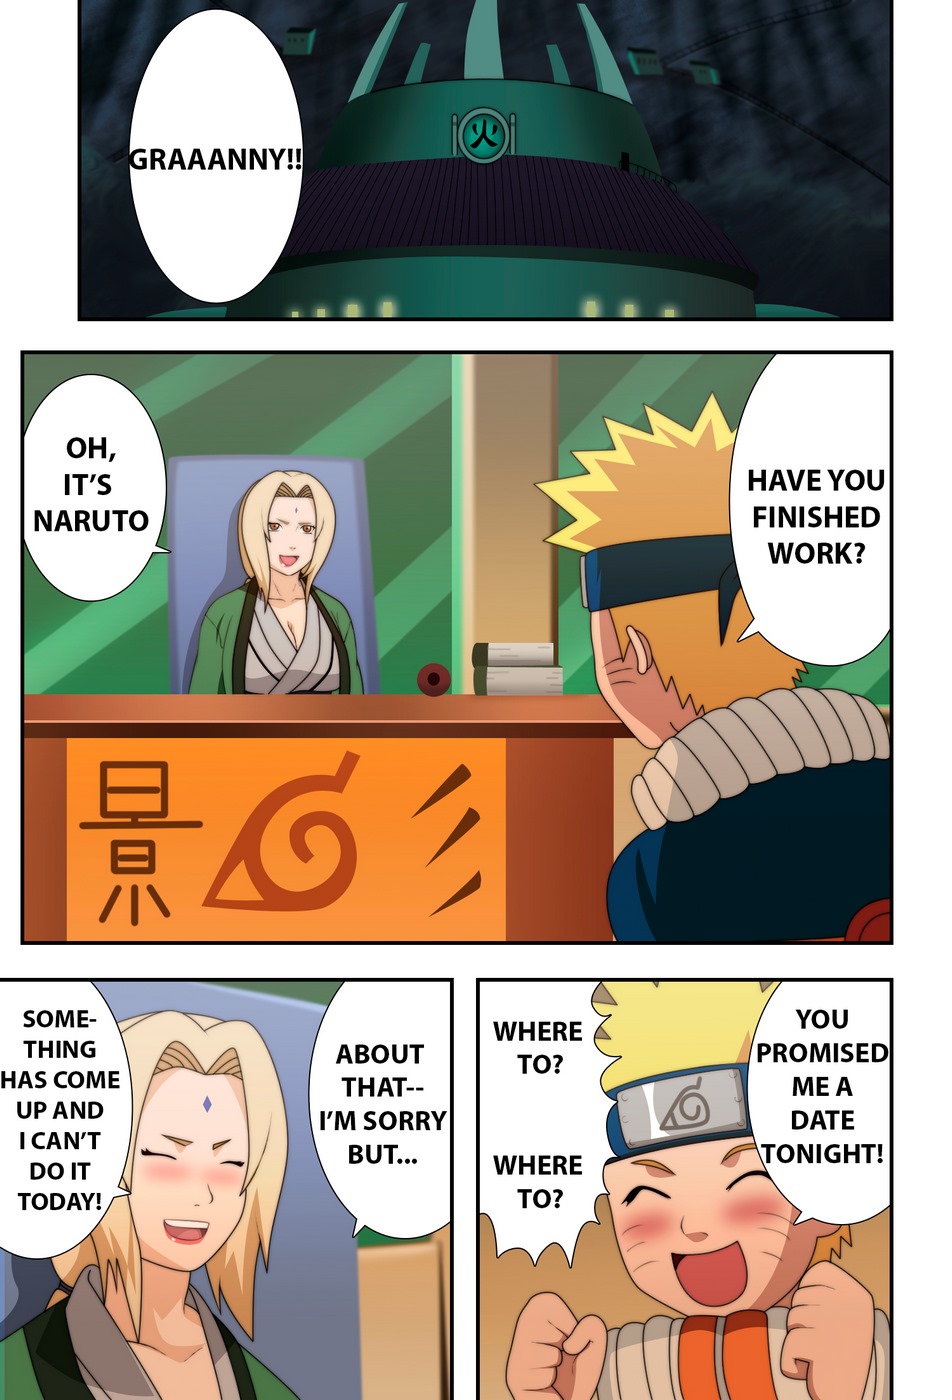 Naruto (naruho) chichikage ใหญ่ น่าเสียดายหน้าอกพวก นินจา